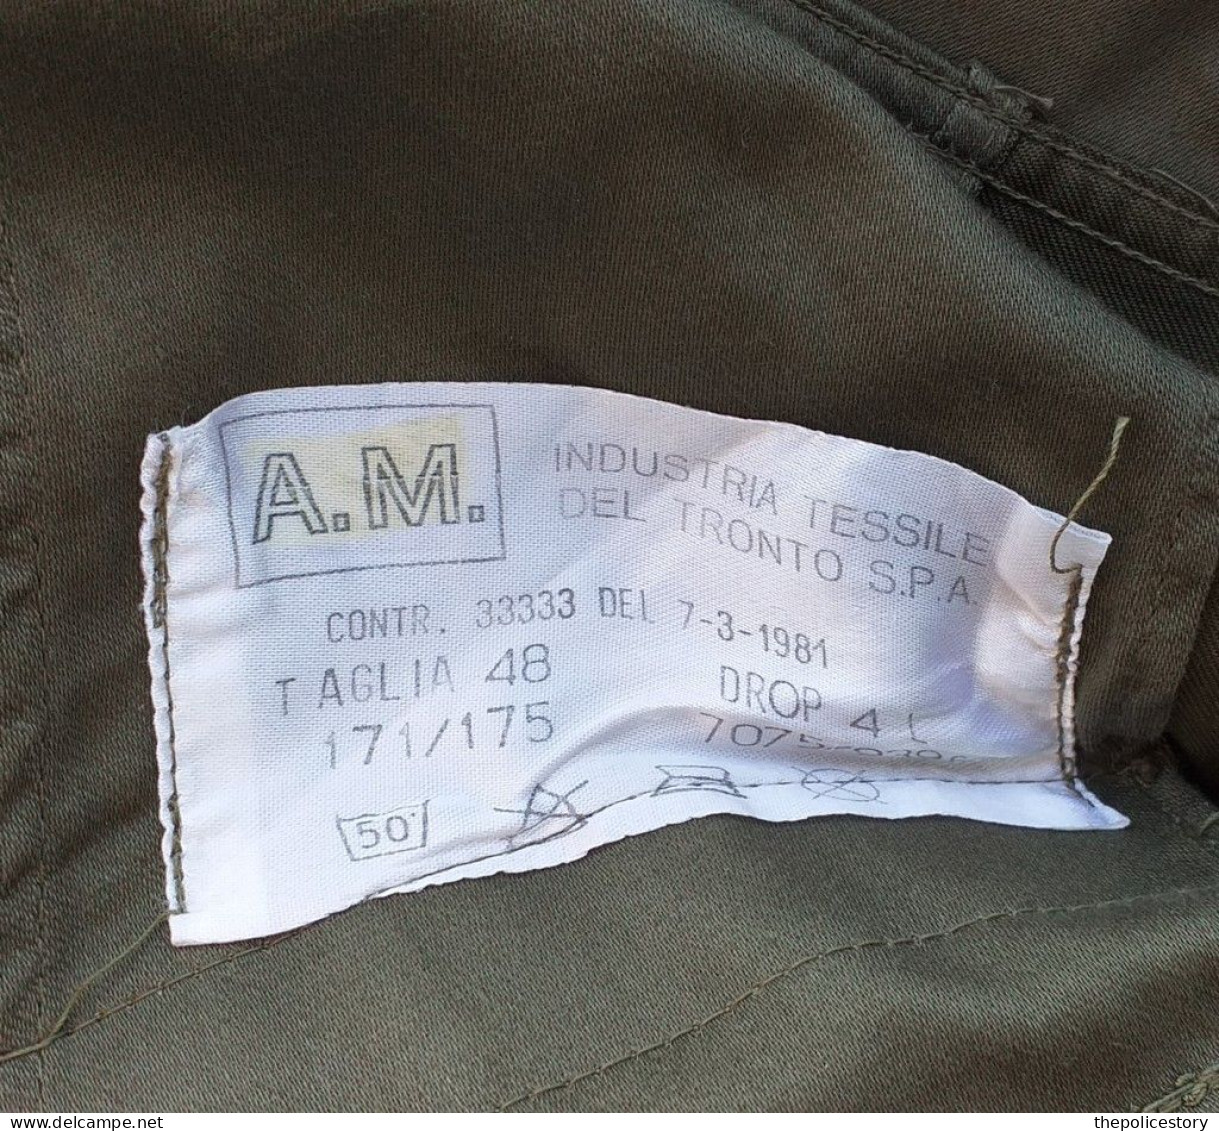 Giacca mimetica Primo Aviere  A.M. spec. VAM del 1981 tg. 48 mai usata etichetta